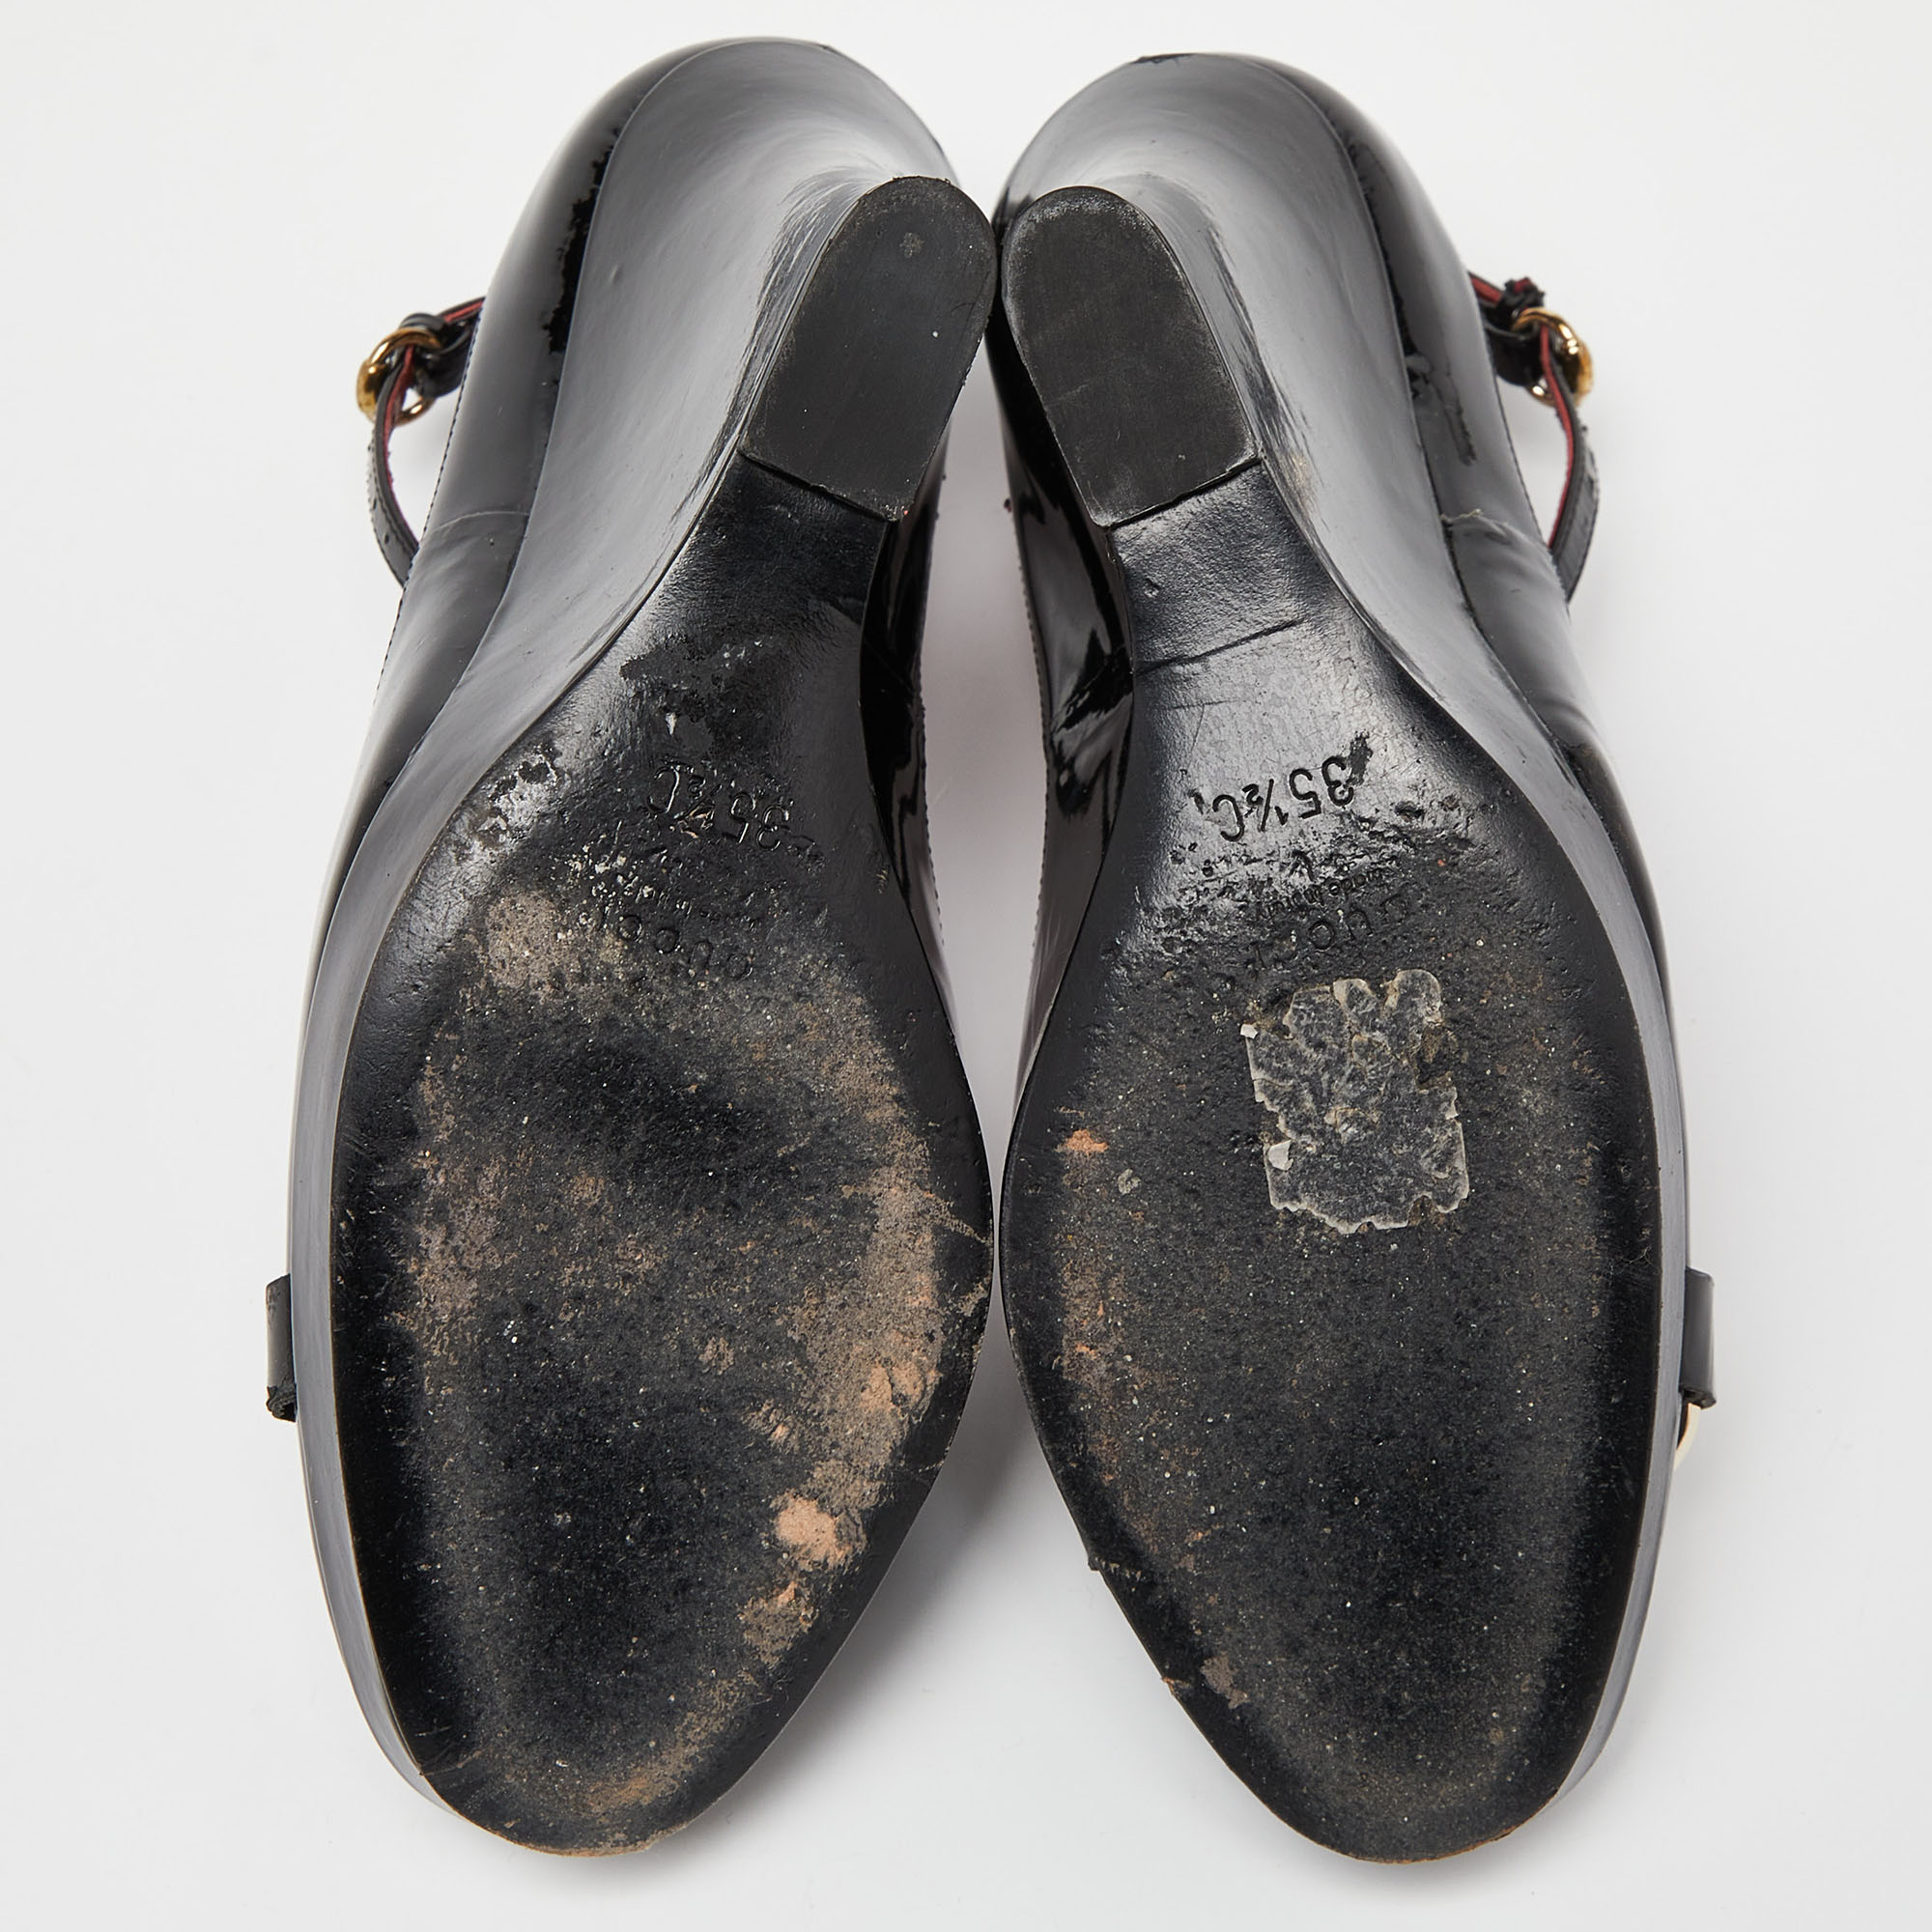 Gucci Black Patent Leather Horsebit Ankle Strap Pumps Size 35.5